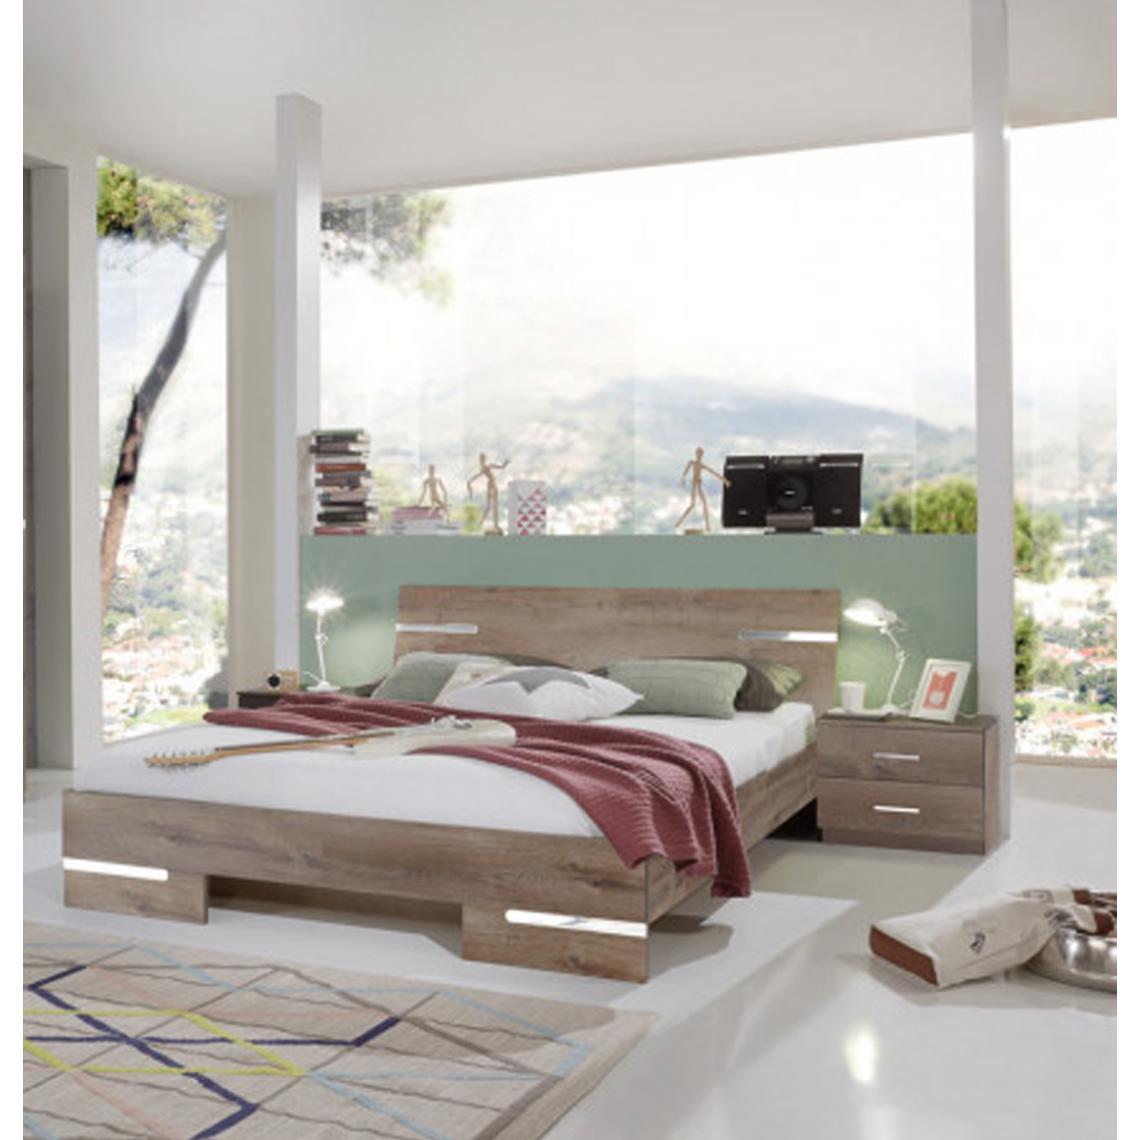 Pegane - Chambre à coucher complète adulte (lit 160x200 cm + 2 chevets + armoire) coloris imitation chêne chataigne/chrome brillant - Chambre complète